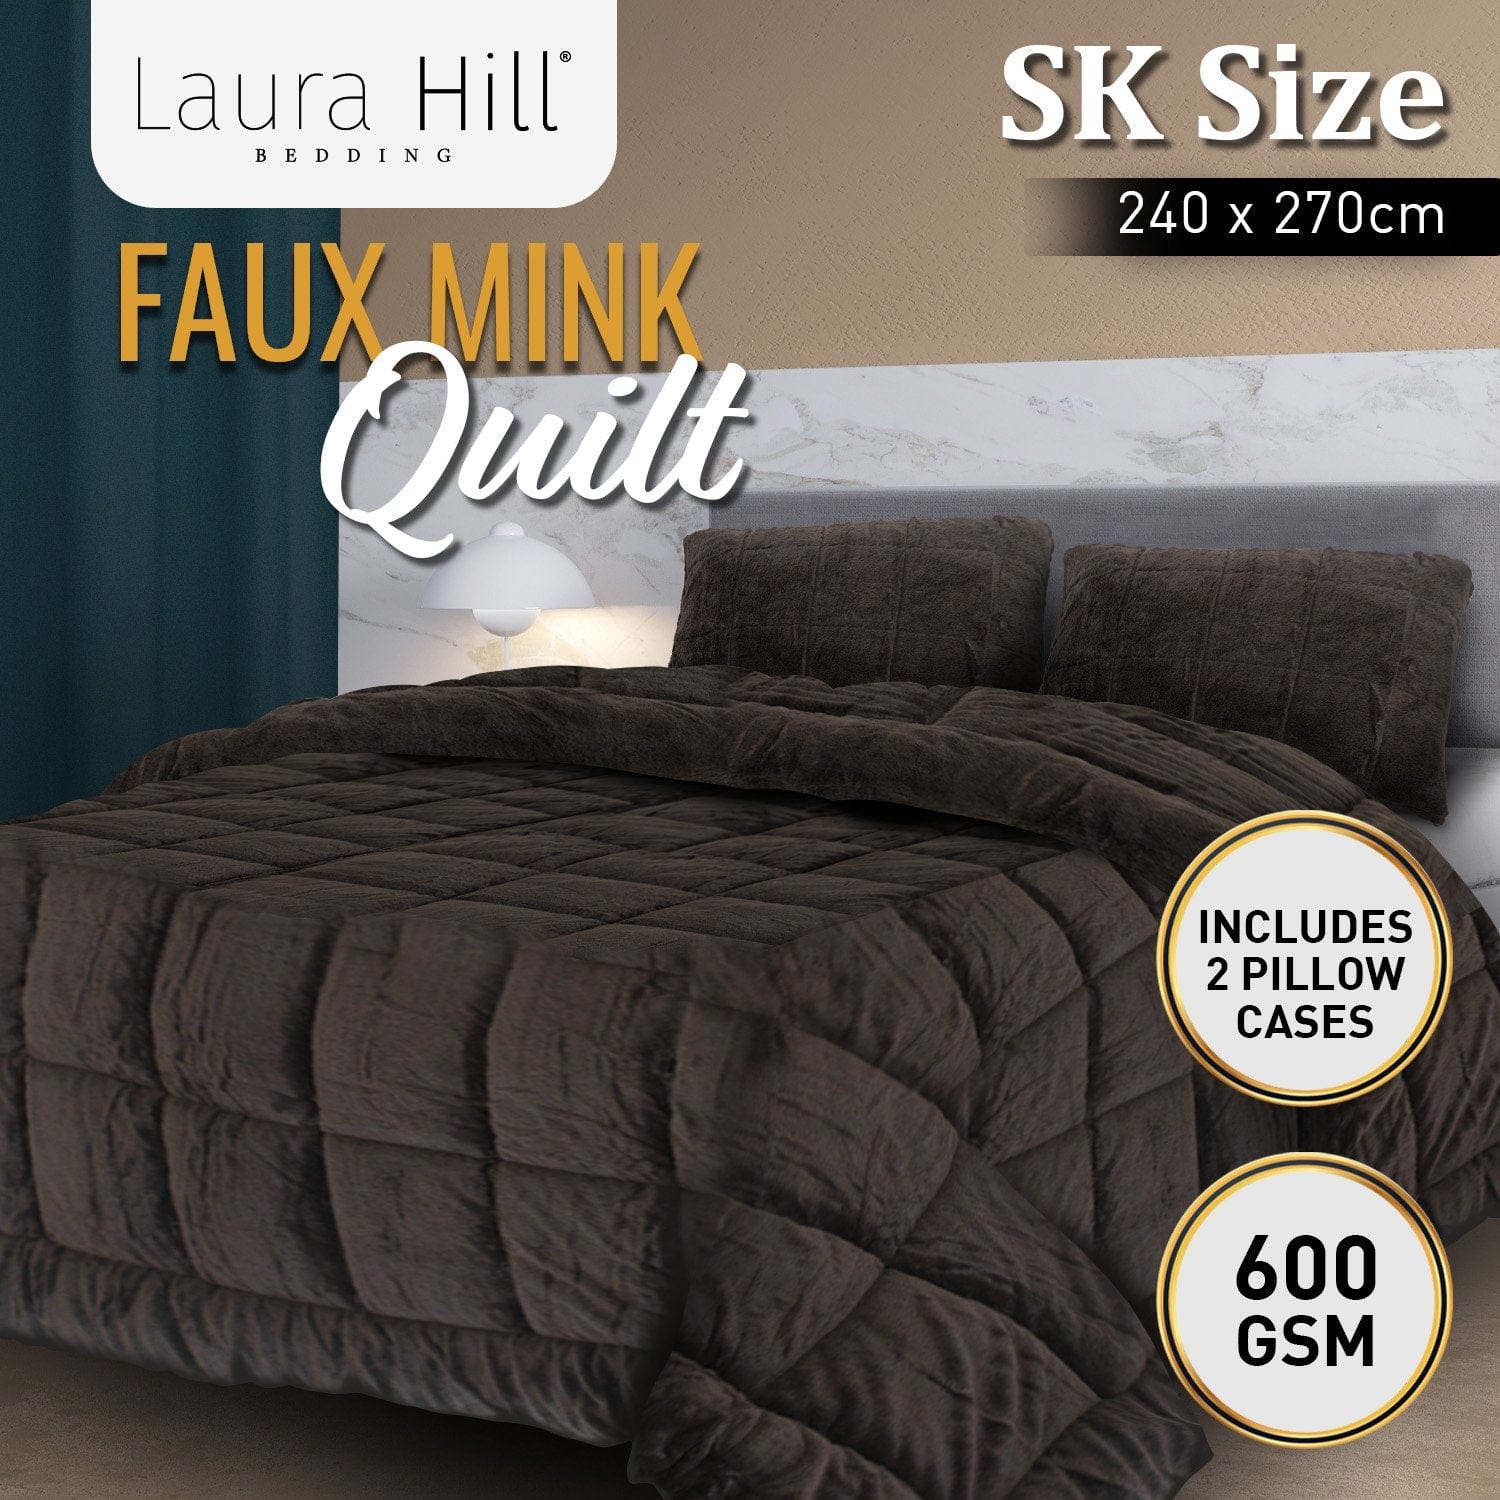 Faux Mink Comforter Quilt Doona Duvet 800GSM - Queen/King/Super King